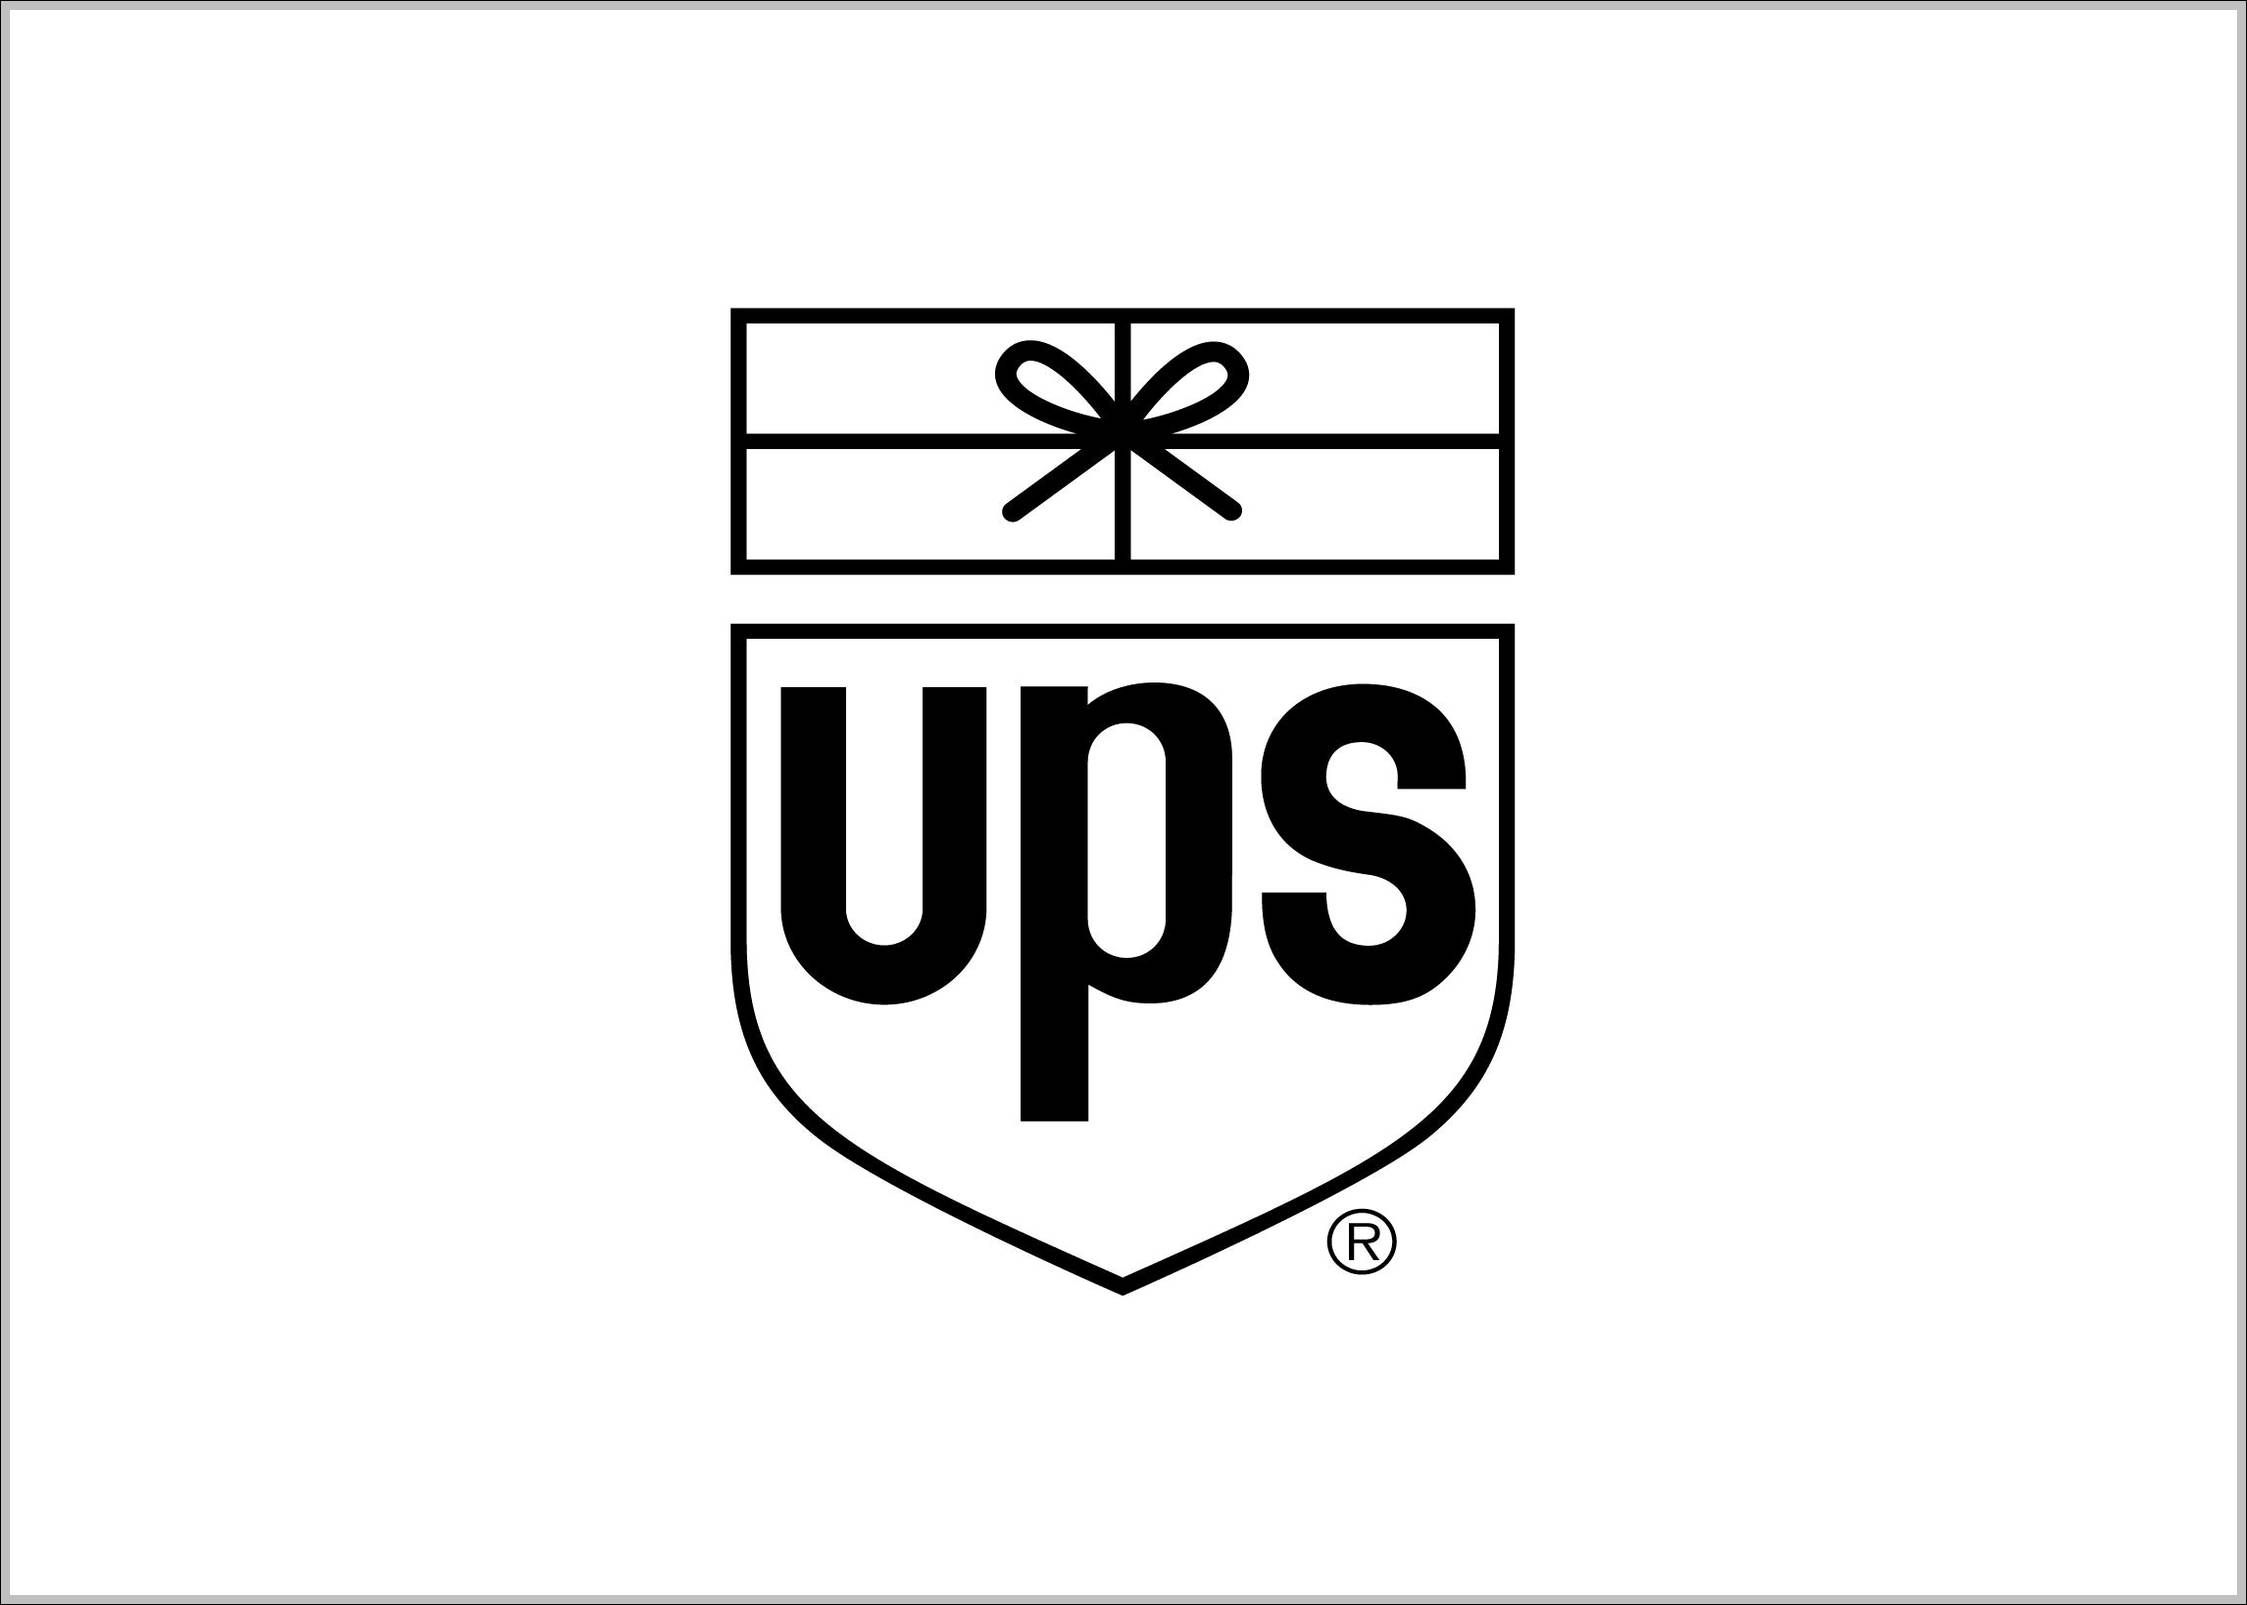 UPS logo old